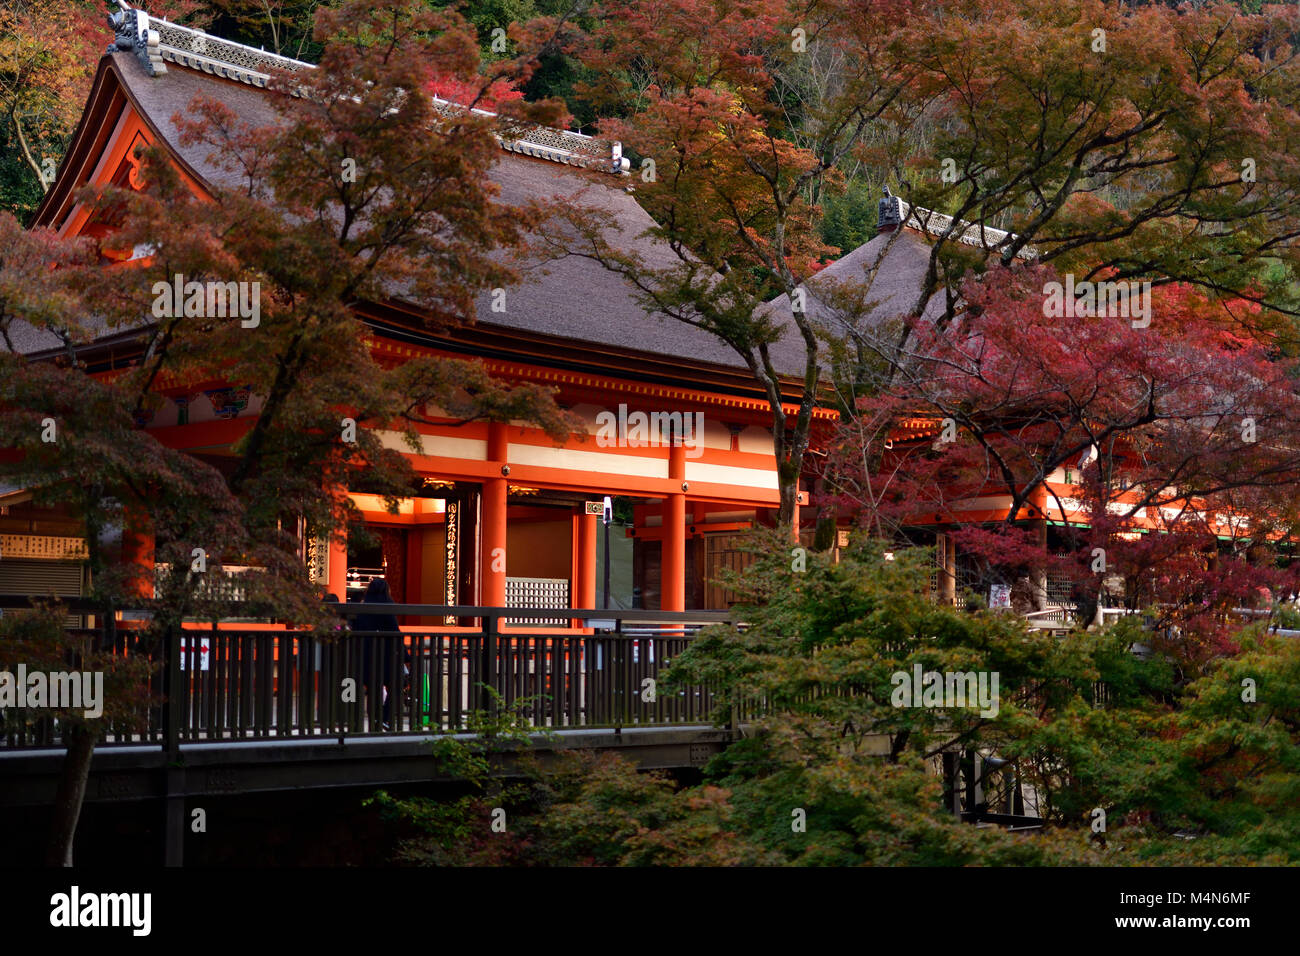 Amida-do e Okuno-nella hall di Kiyomizu-dera tempio buddista in autunno il paesaggio. Kyoto, Giappone 2017. Foto Stock